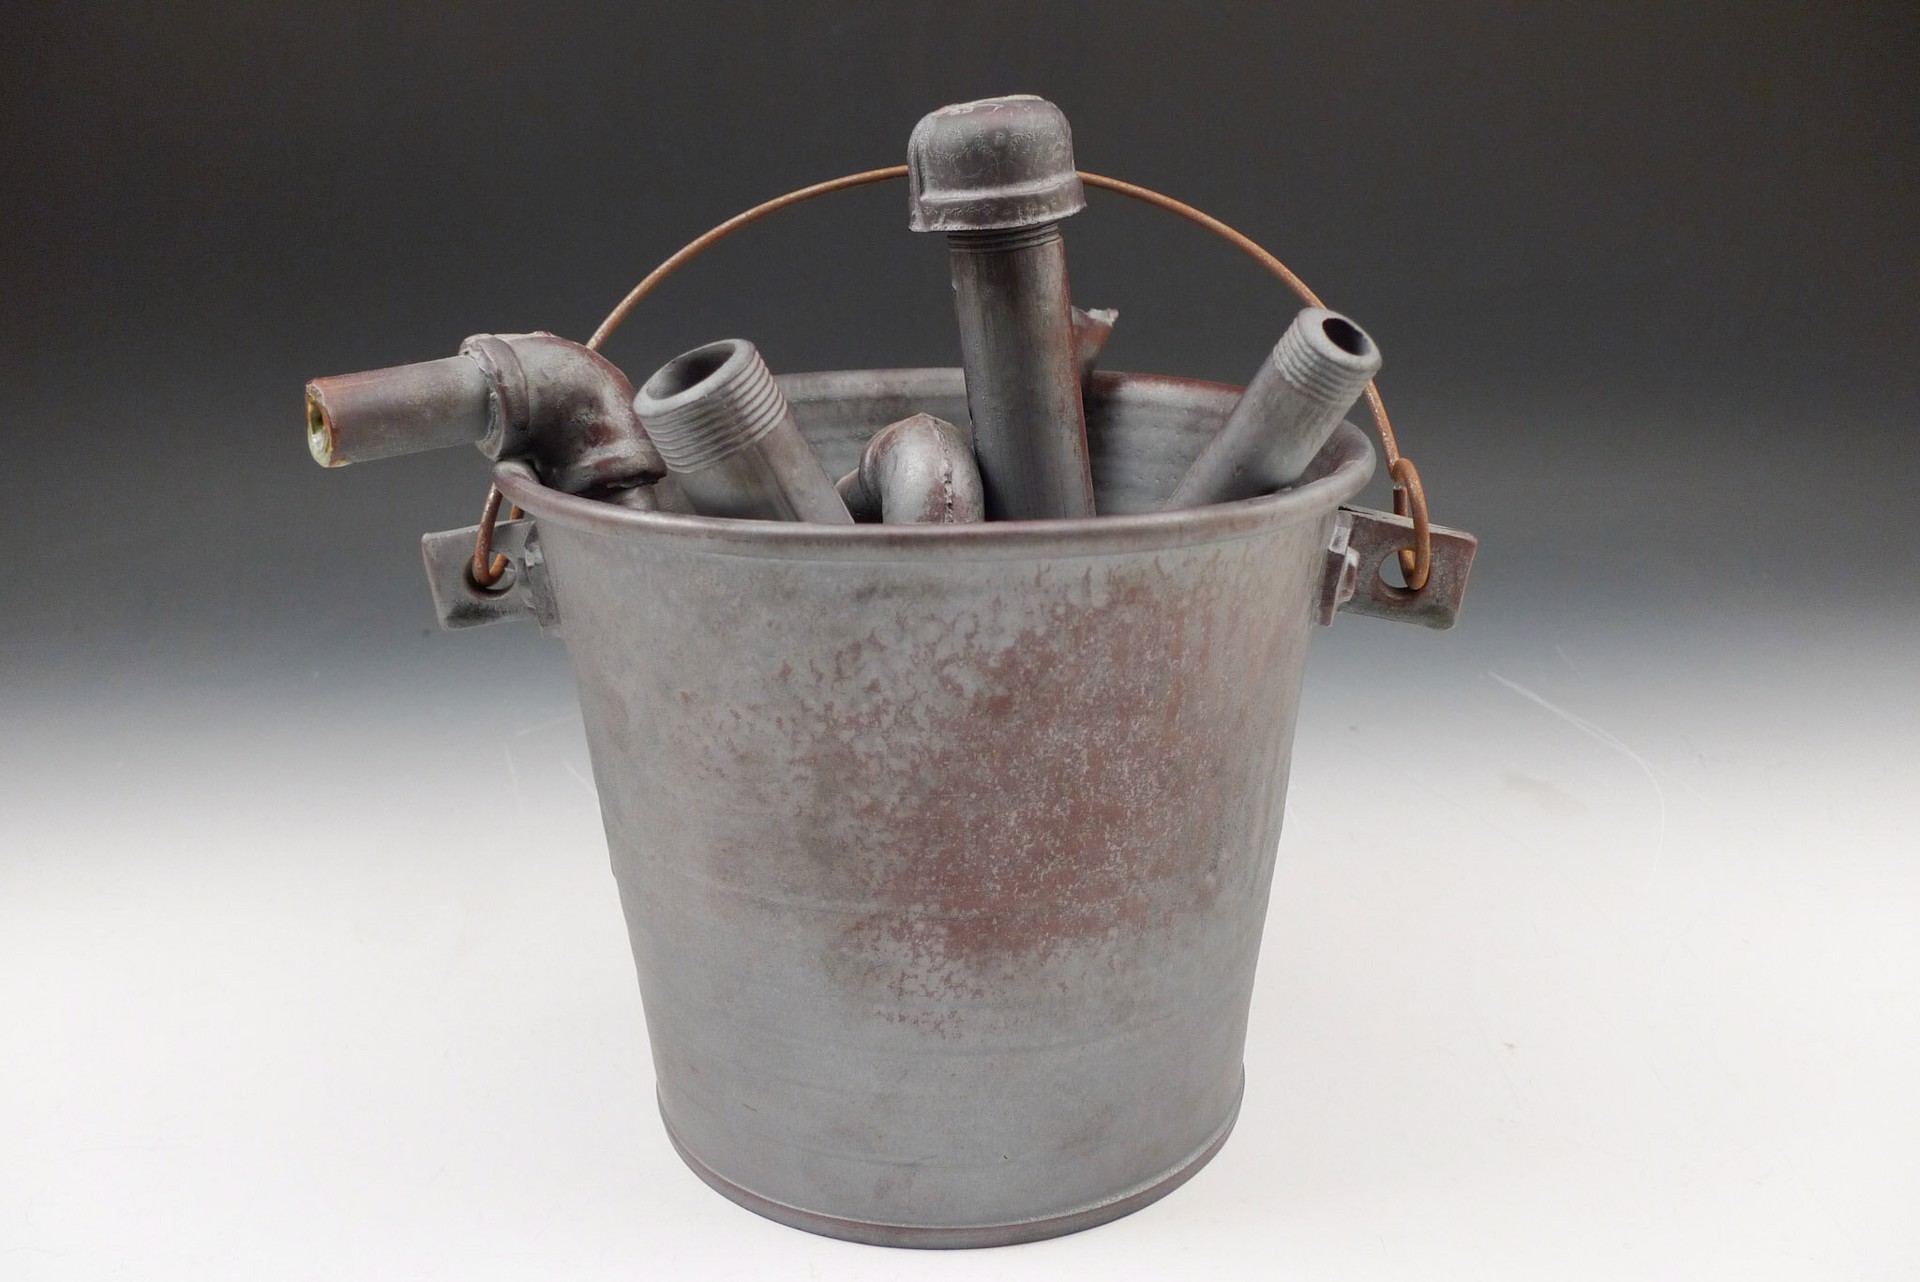 Plumbers Bucket by Michael Schwegmann